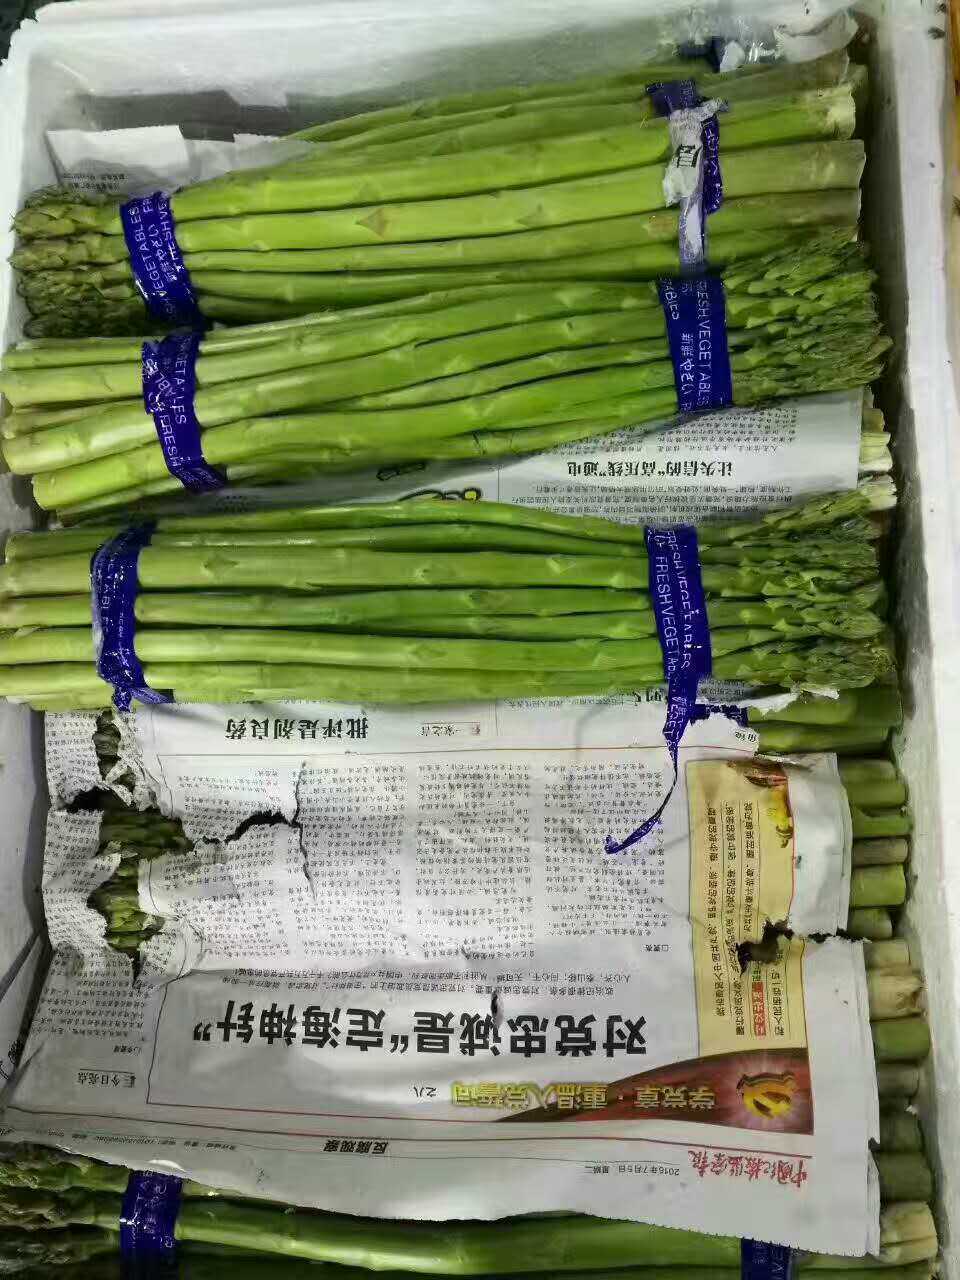 天津蔬菜配送中心